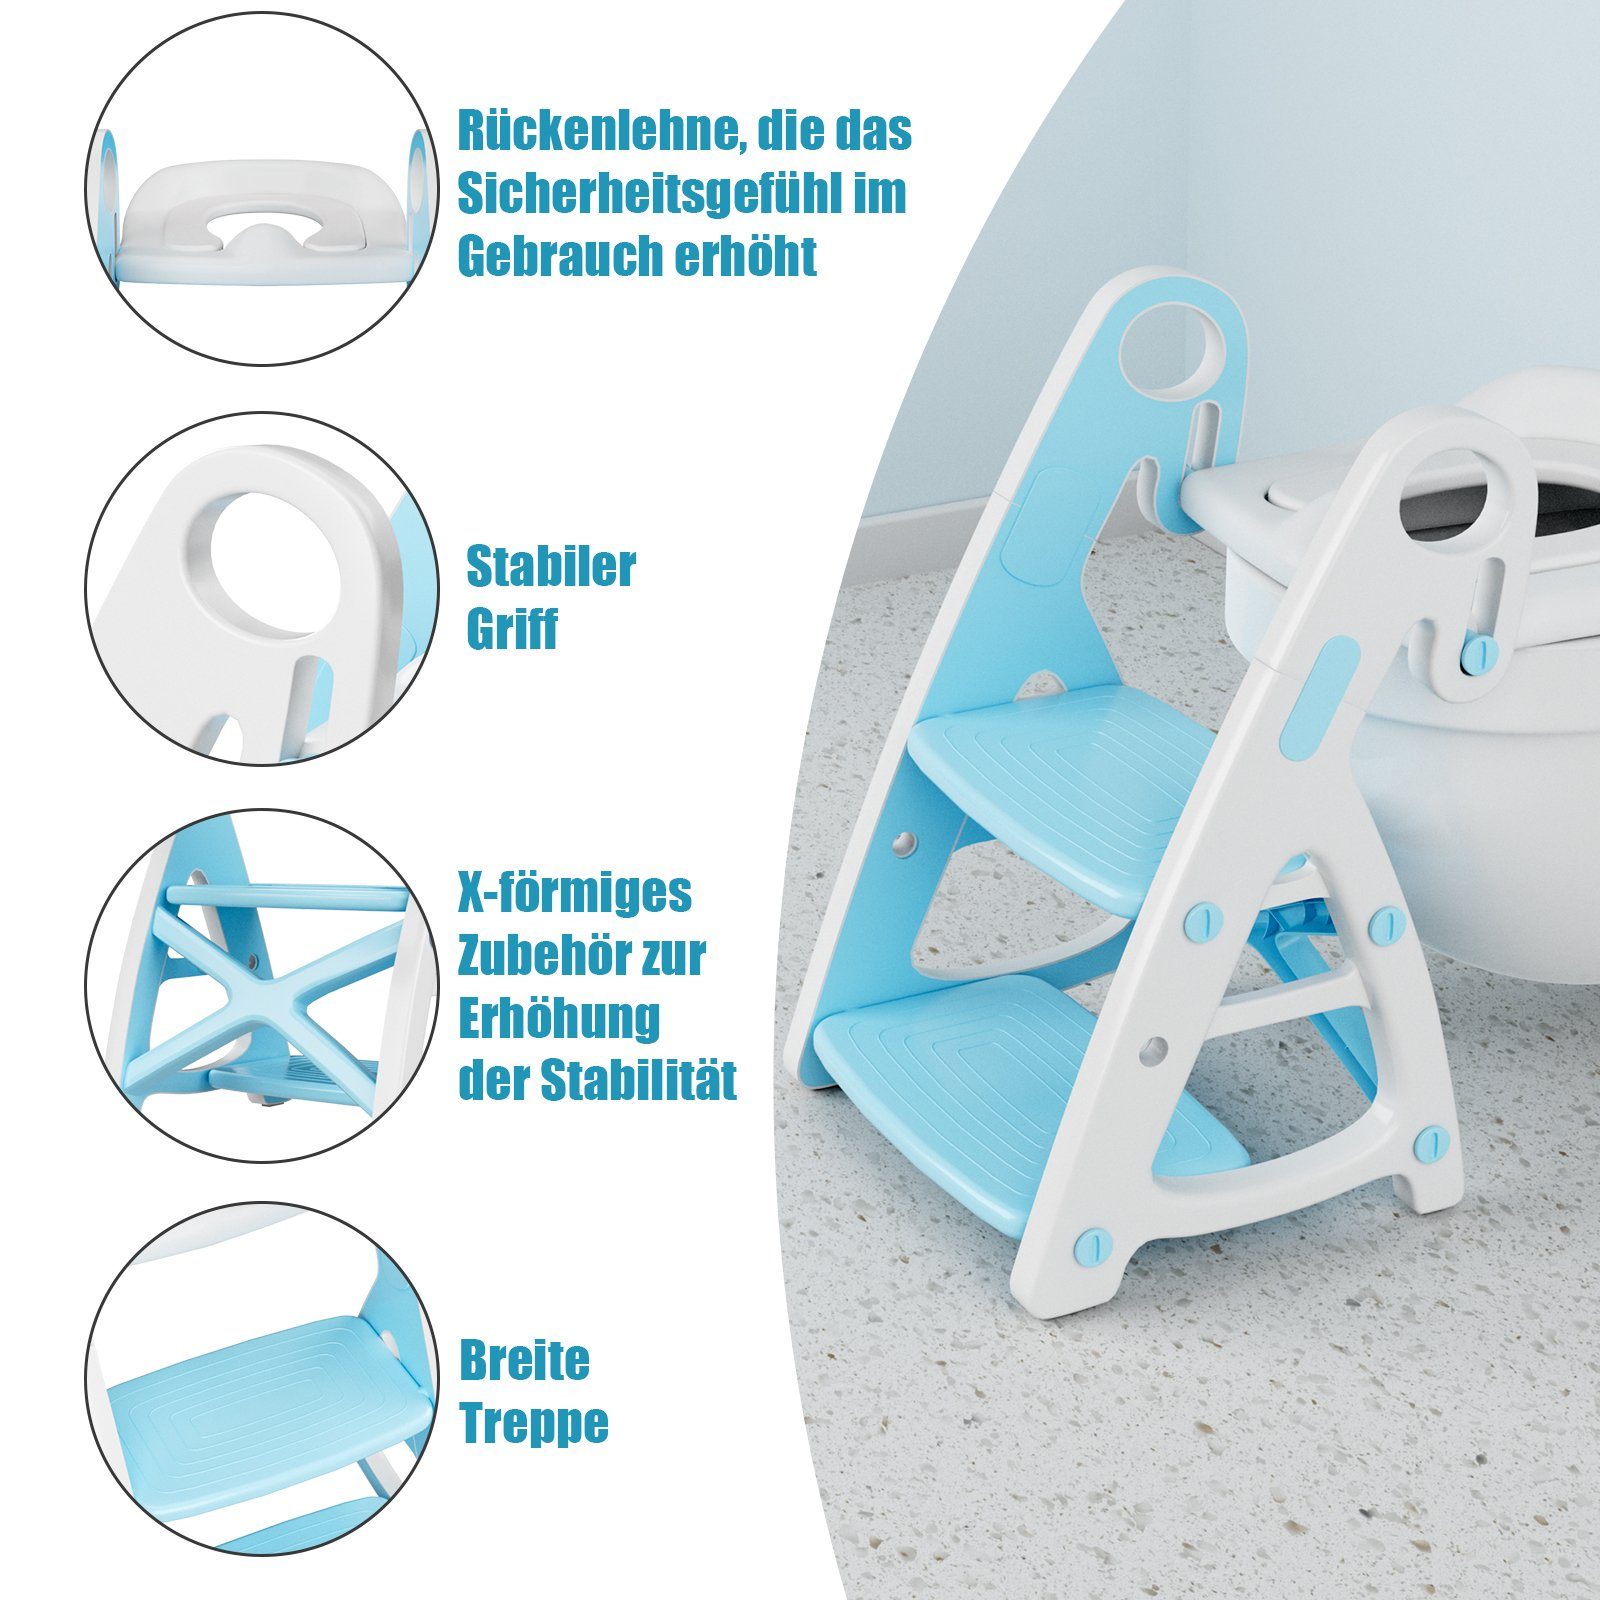 TLGREEN Toilettentrainer Toilettensitz Kinder Baby 1 Treppe, Blau 2 mit in mit Tritthocker Toilettensitz